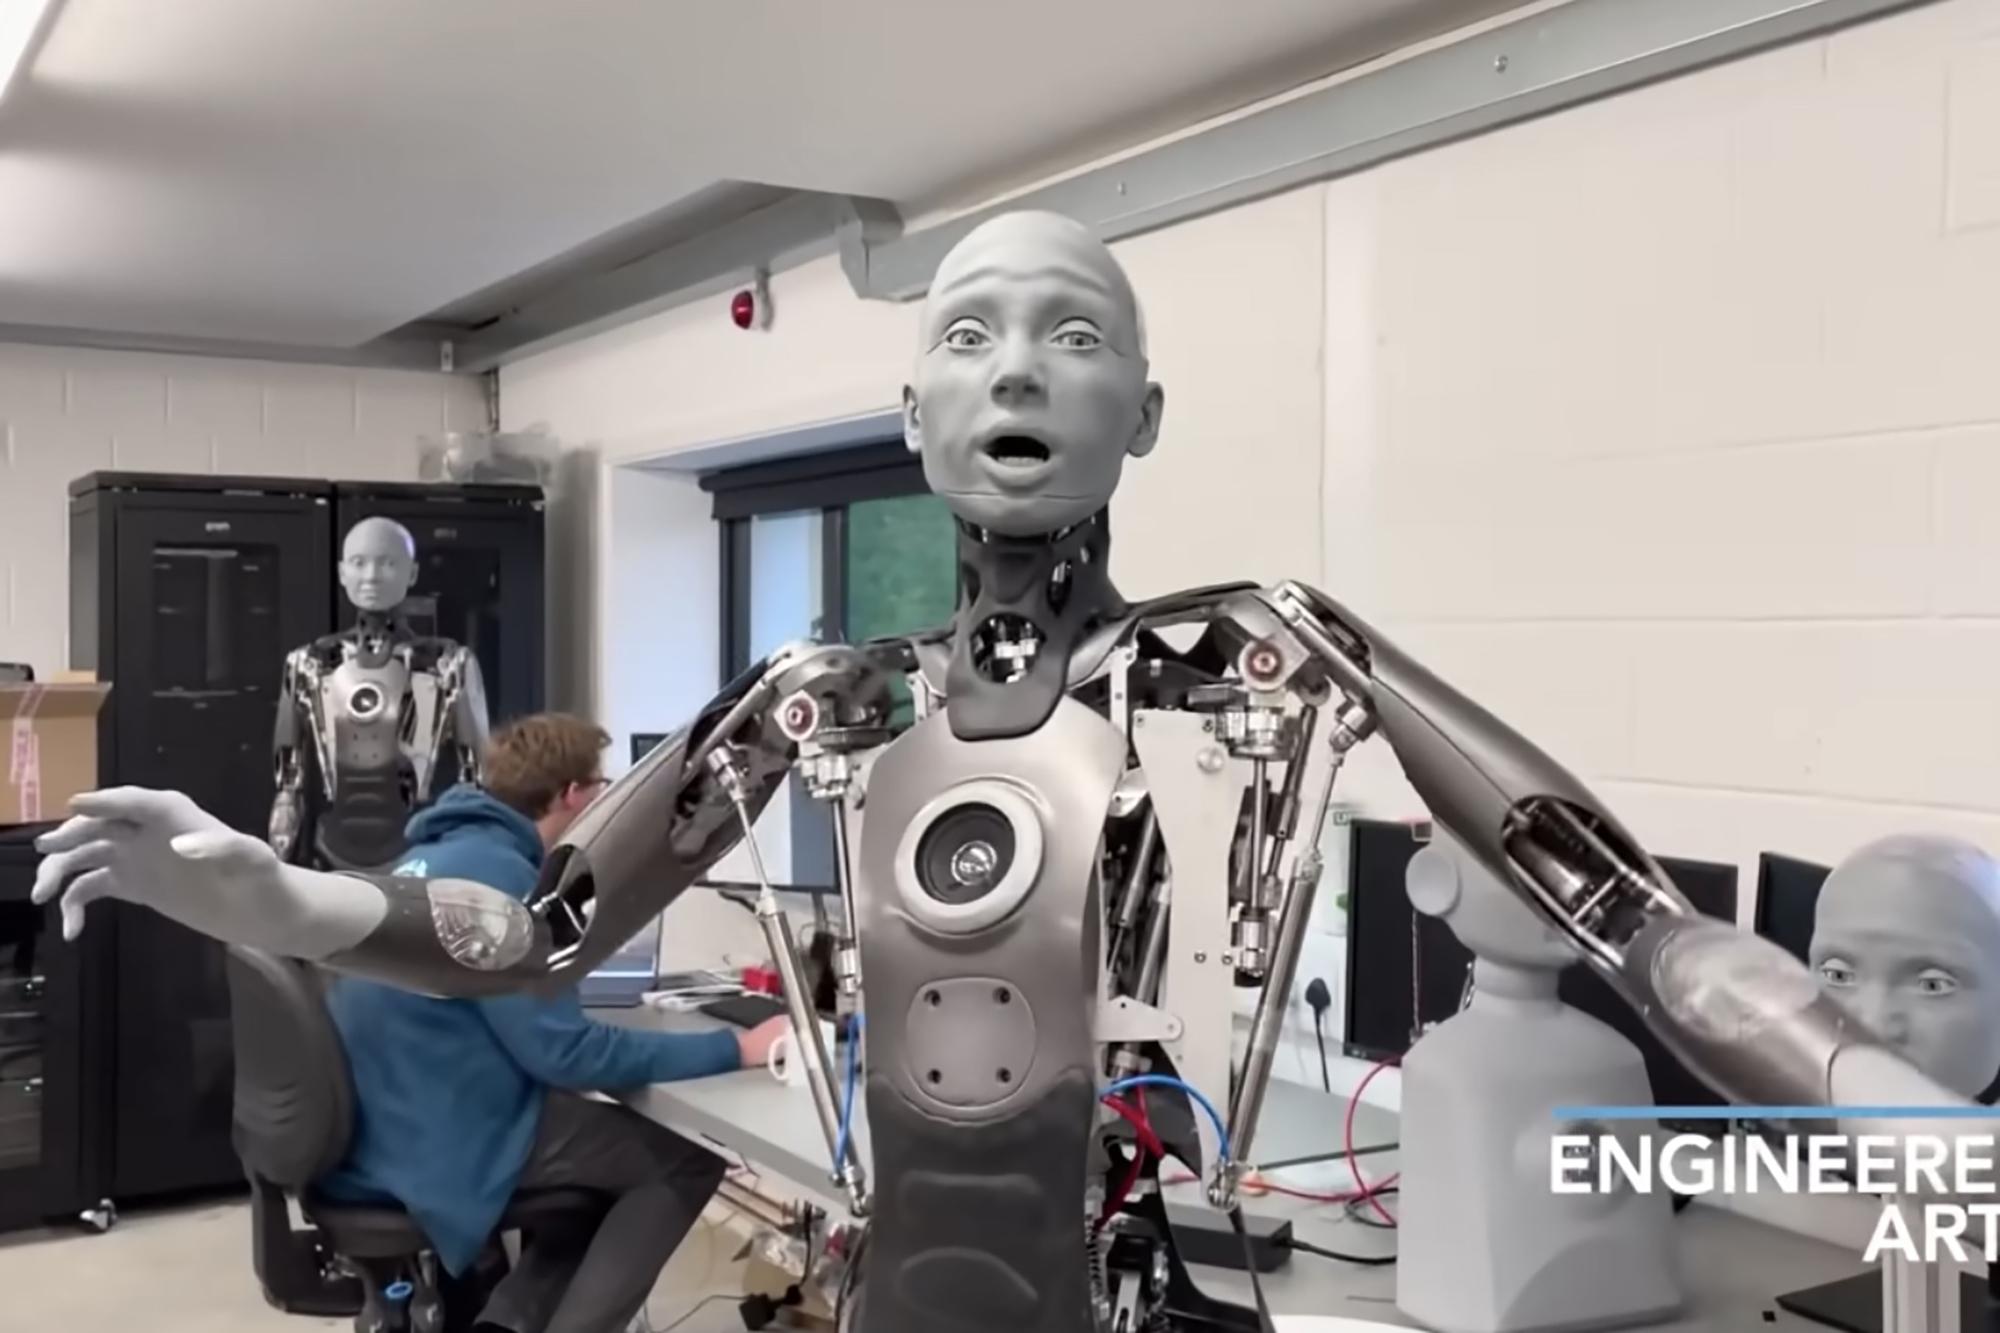 Biểu cảm sinh động của robot thường rất thú vị và bất ngờ. Xem hình và khám phá những chi tiết tuyệt vời về cách mà những robot này có thể hiện thị giác và truyền tải cảm xúc. Sự kết hợp giữa công nghệ và nghệ thuật sẽ khiến bạn say mê!